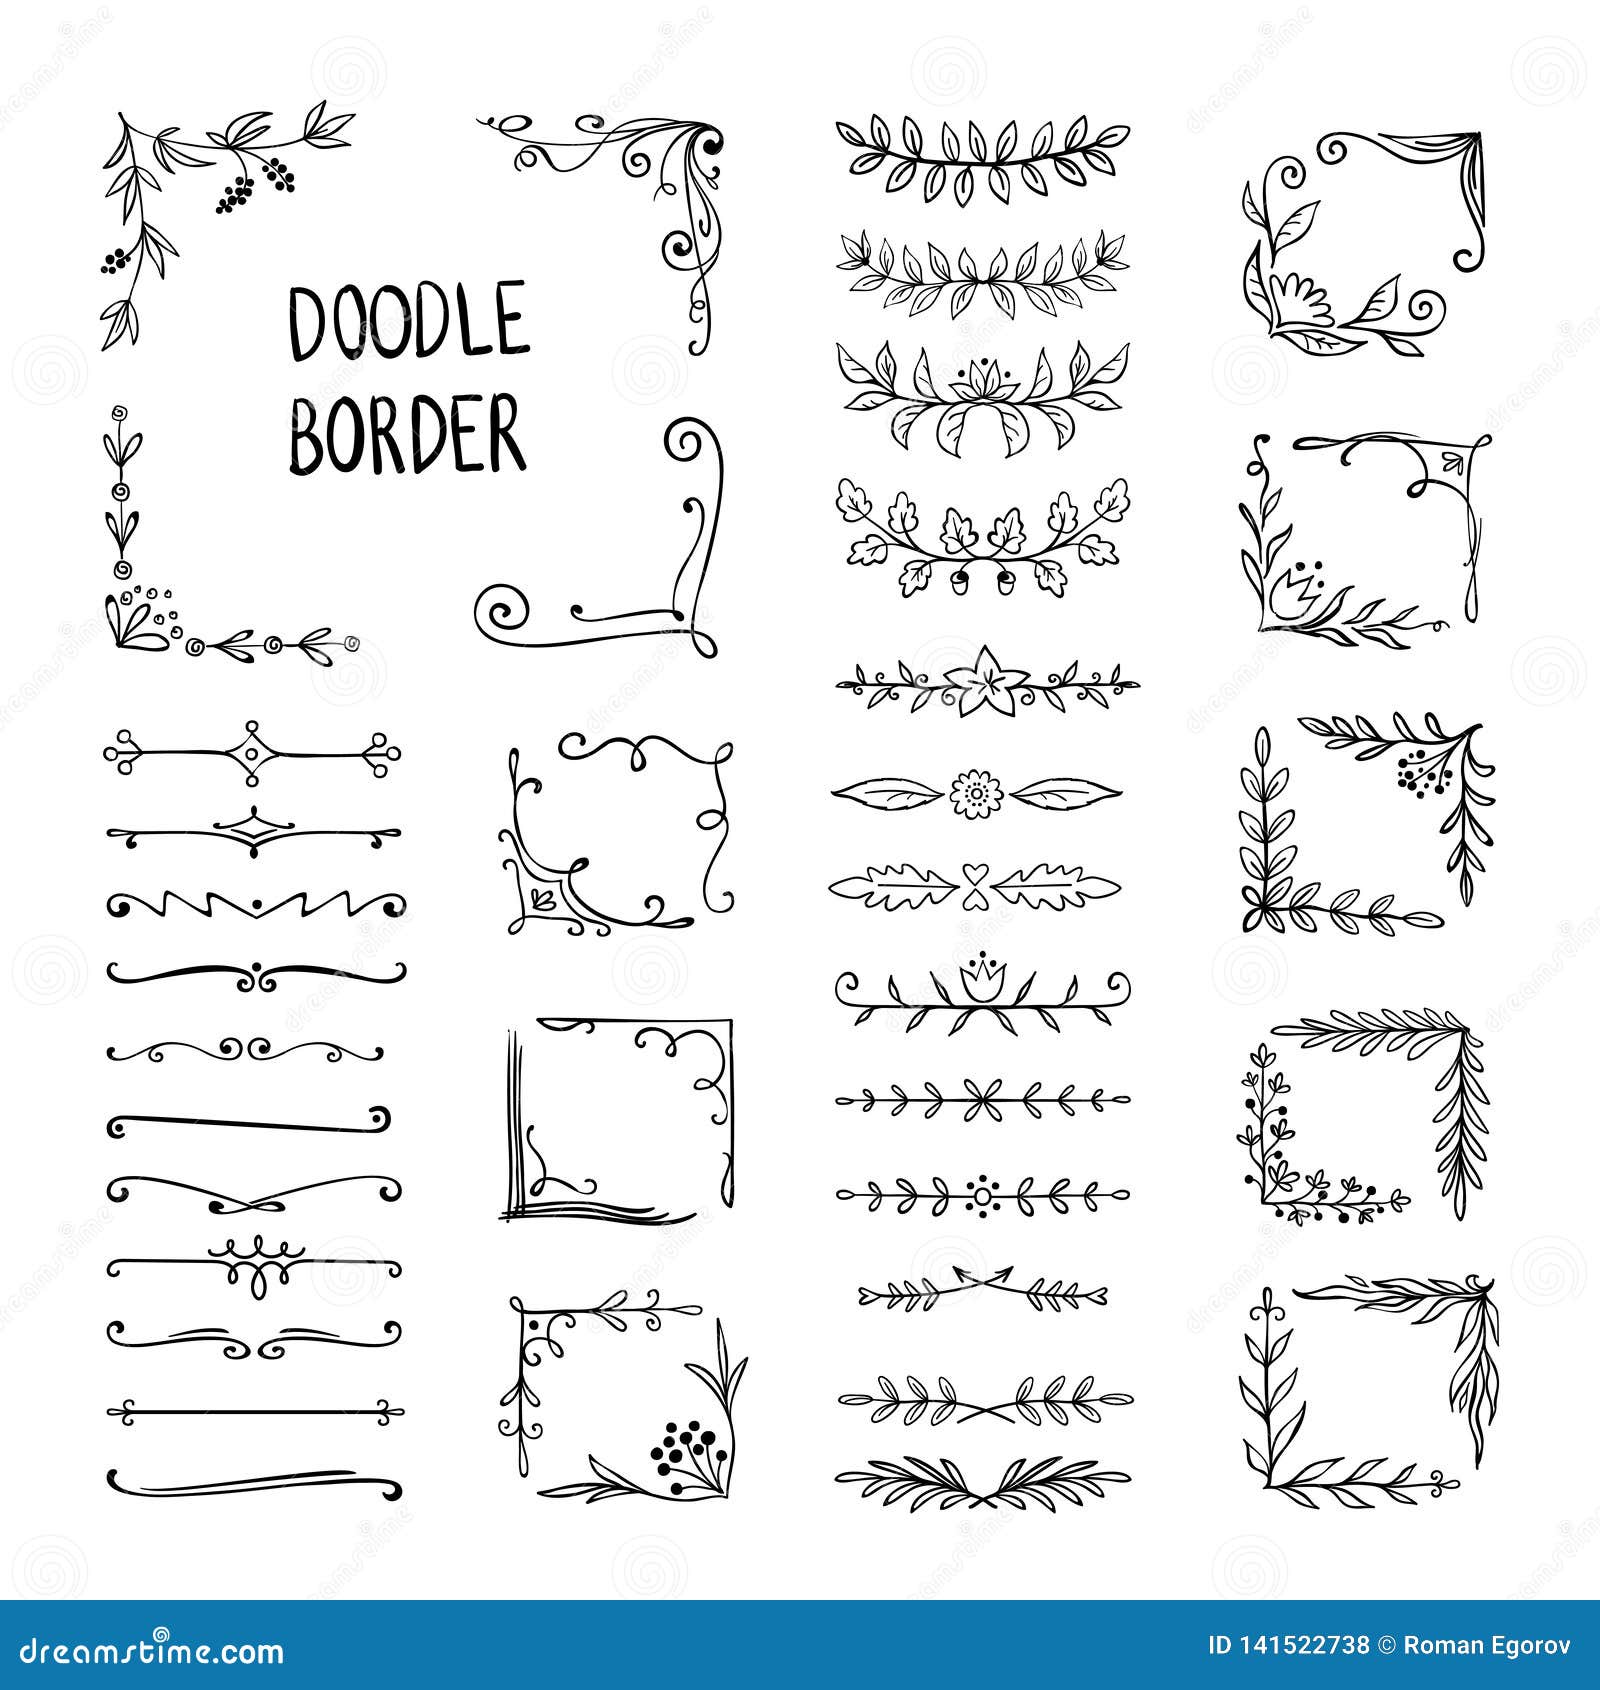 doodle border. flower ornament frame, hand drawn decorative corner s, floral sketch pattern.  doodle frame